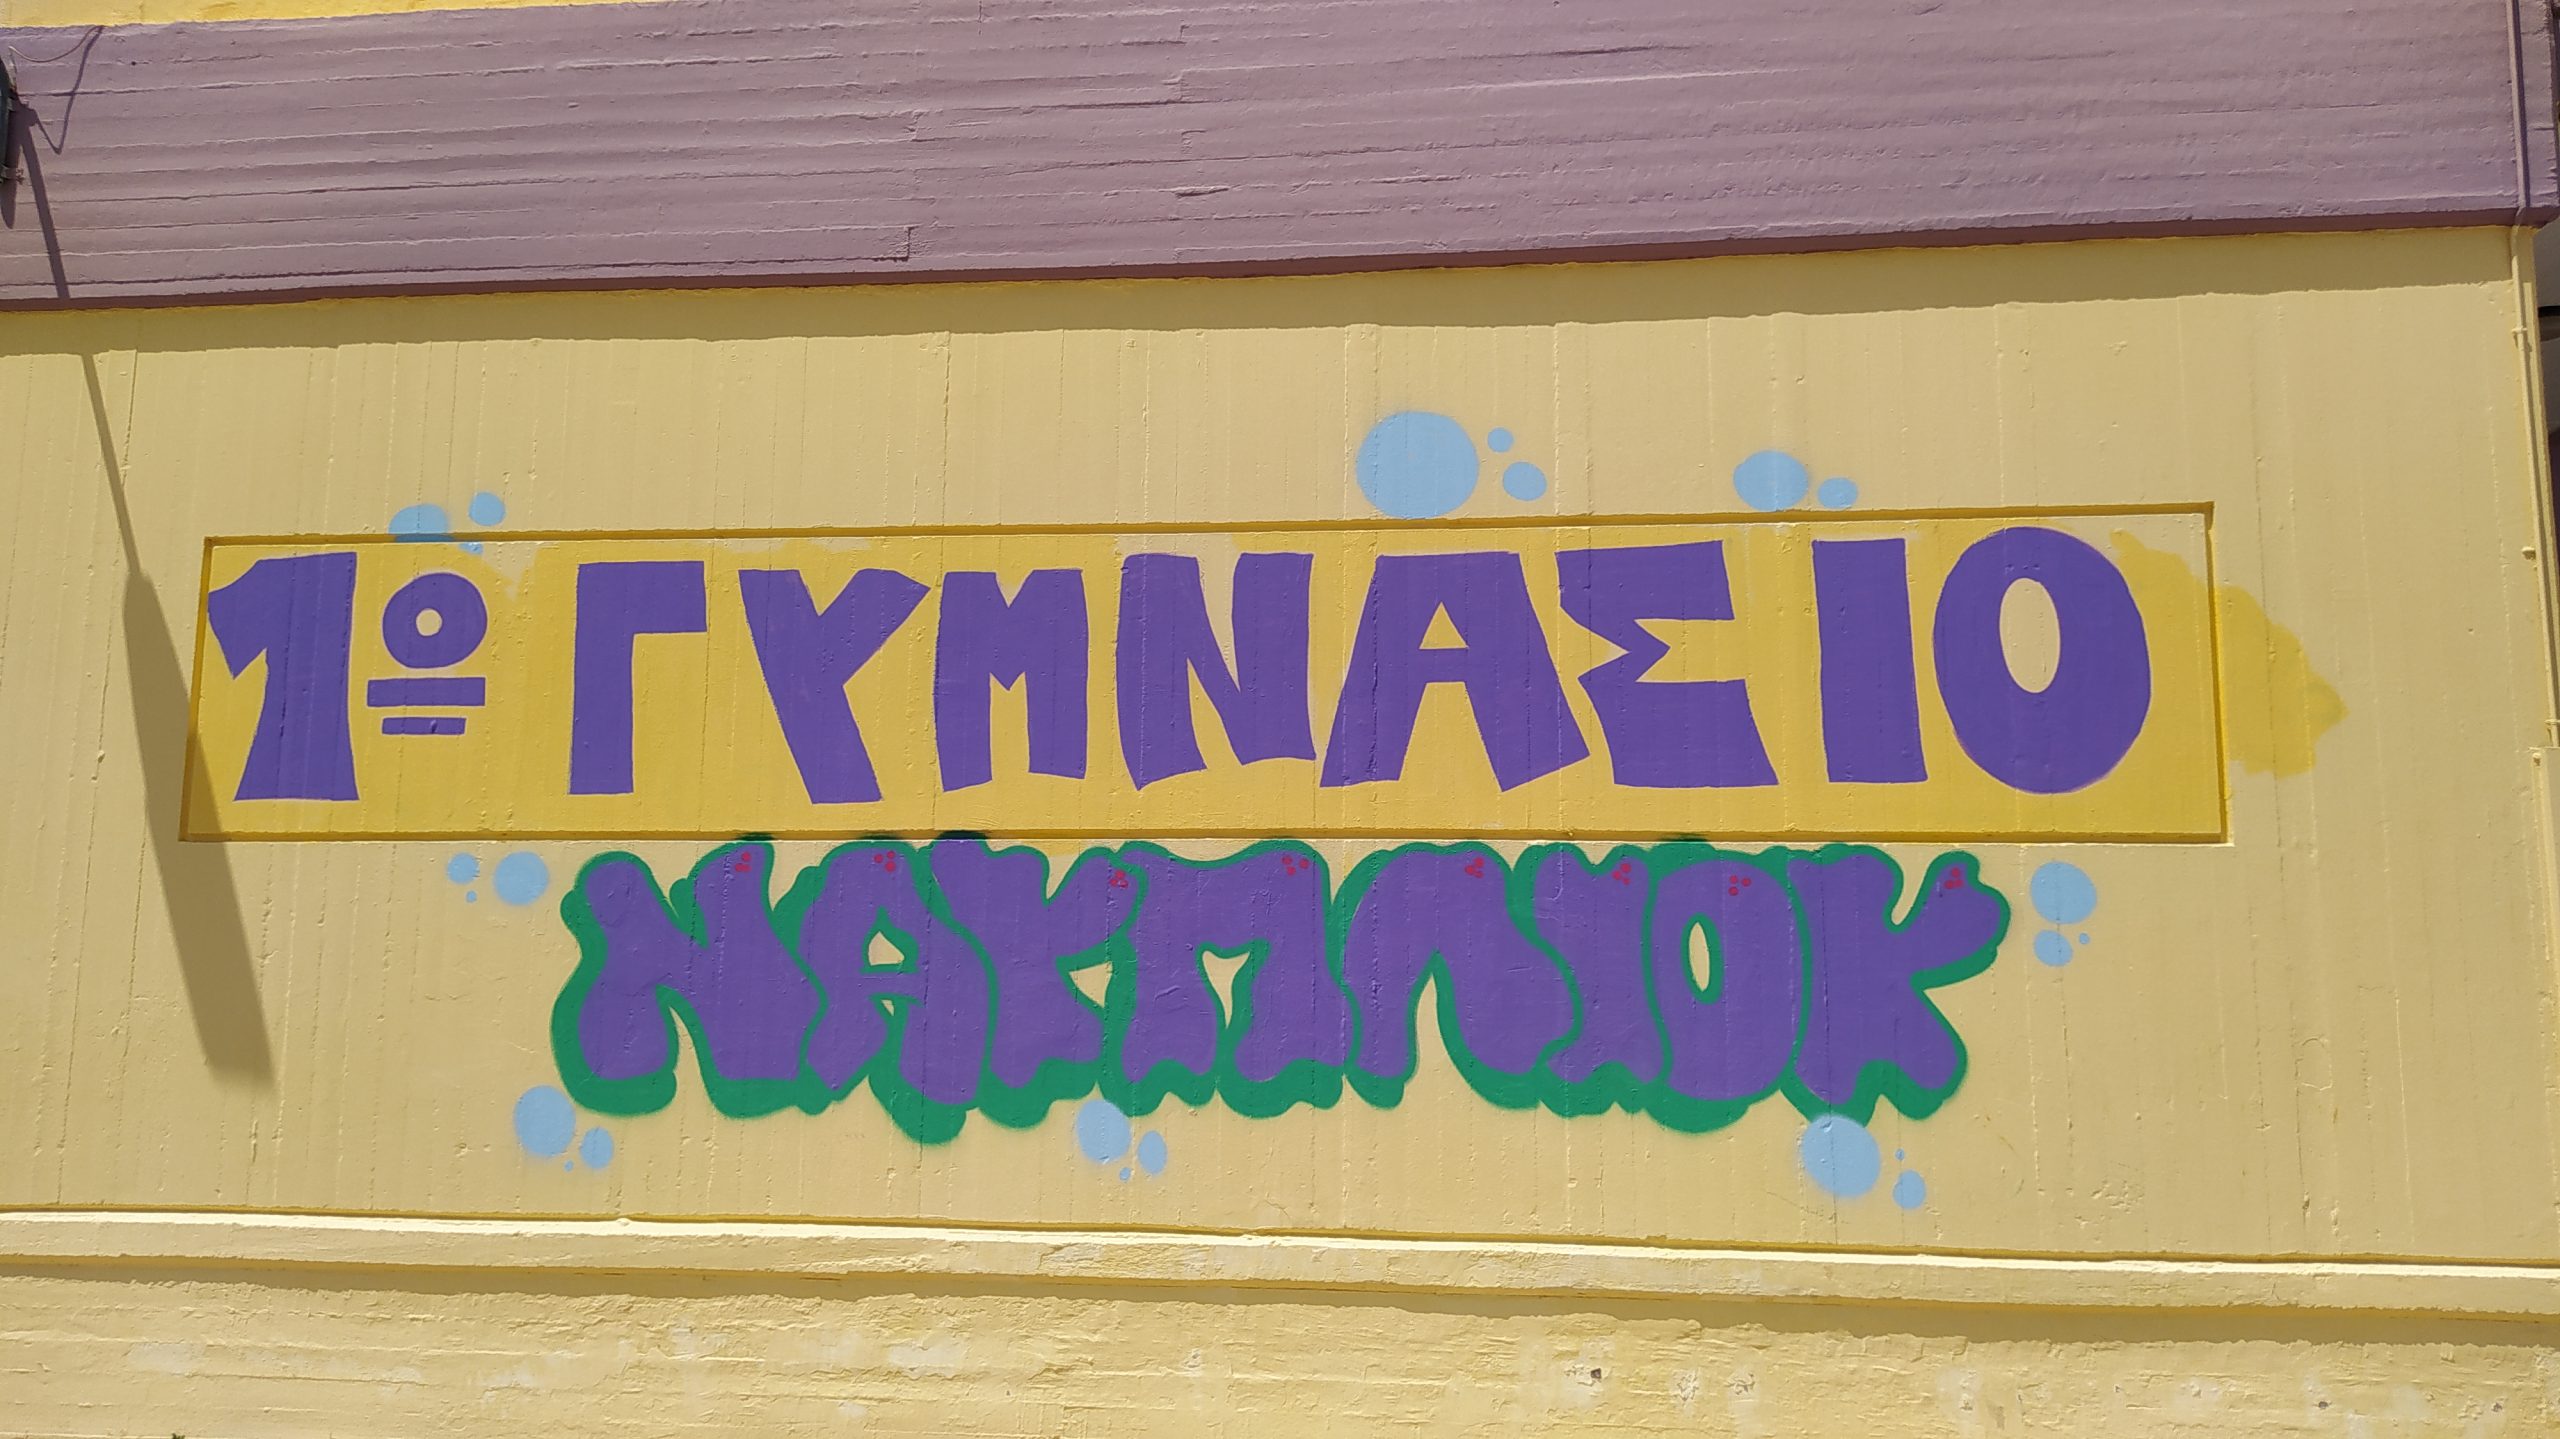 1ο Γυμνάσιο Ναυπλίου: Oμόρφυναν με graffiti το σχολείο τους